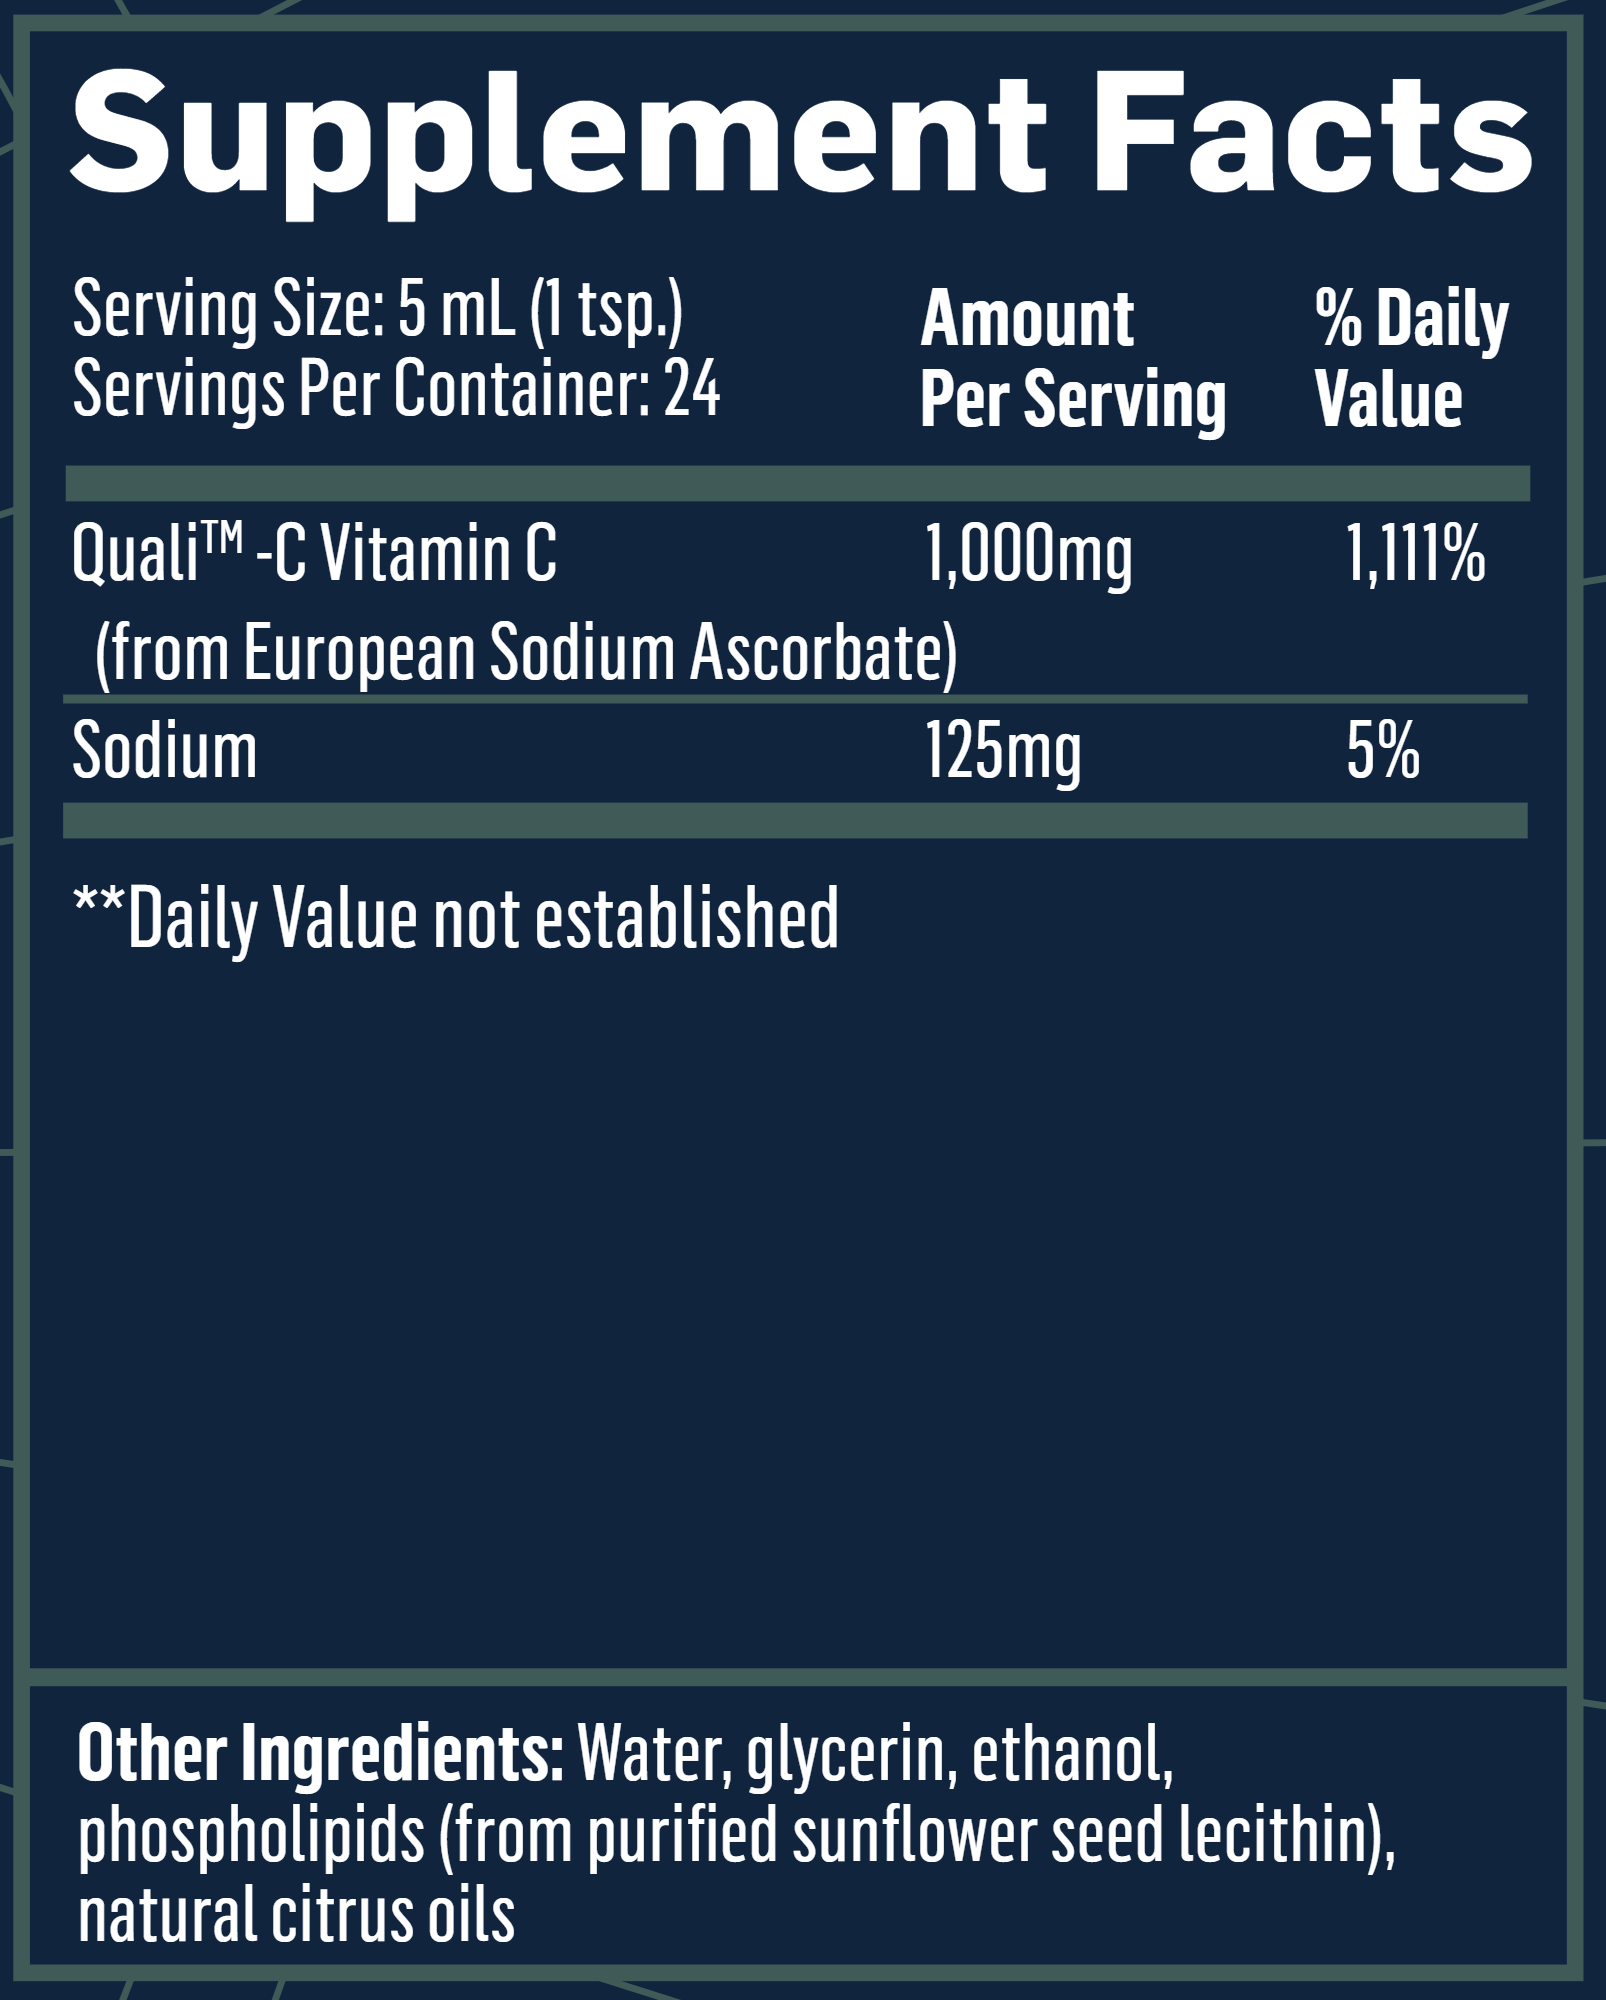 Vitamin C Liposomal 4 oz bottle ingredients label